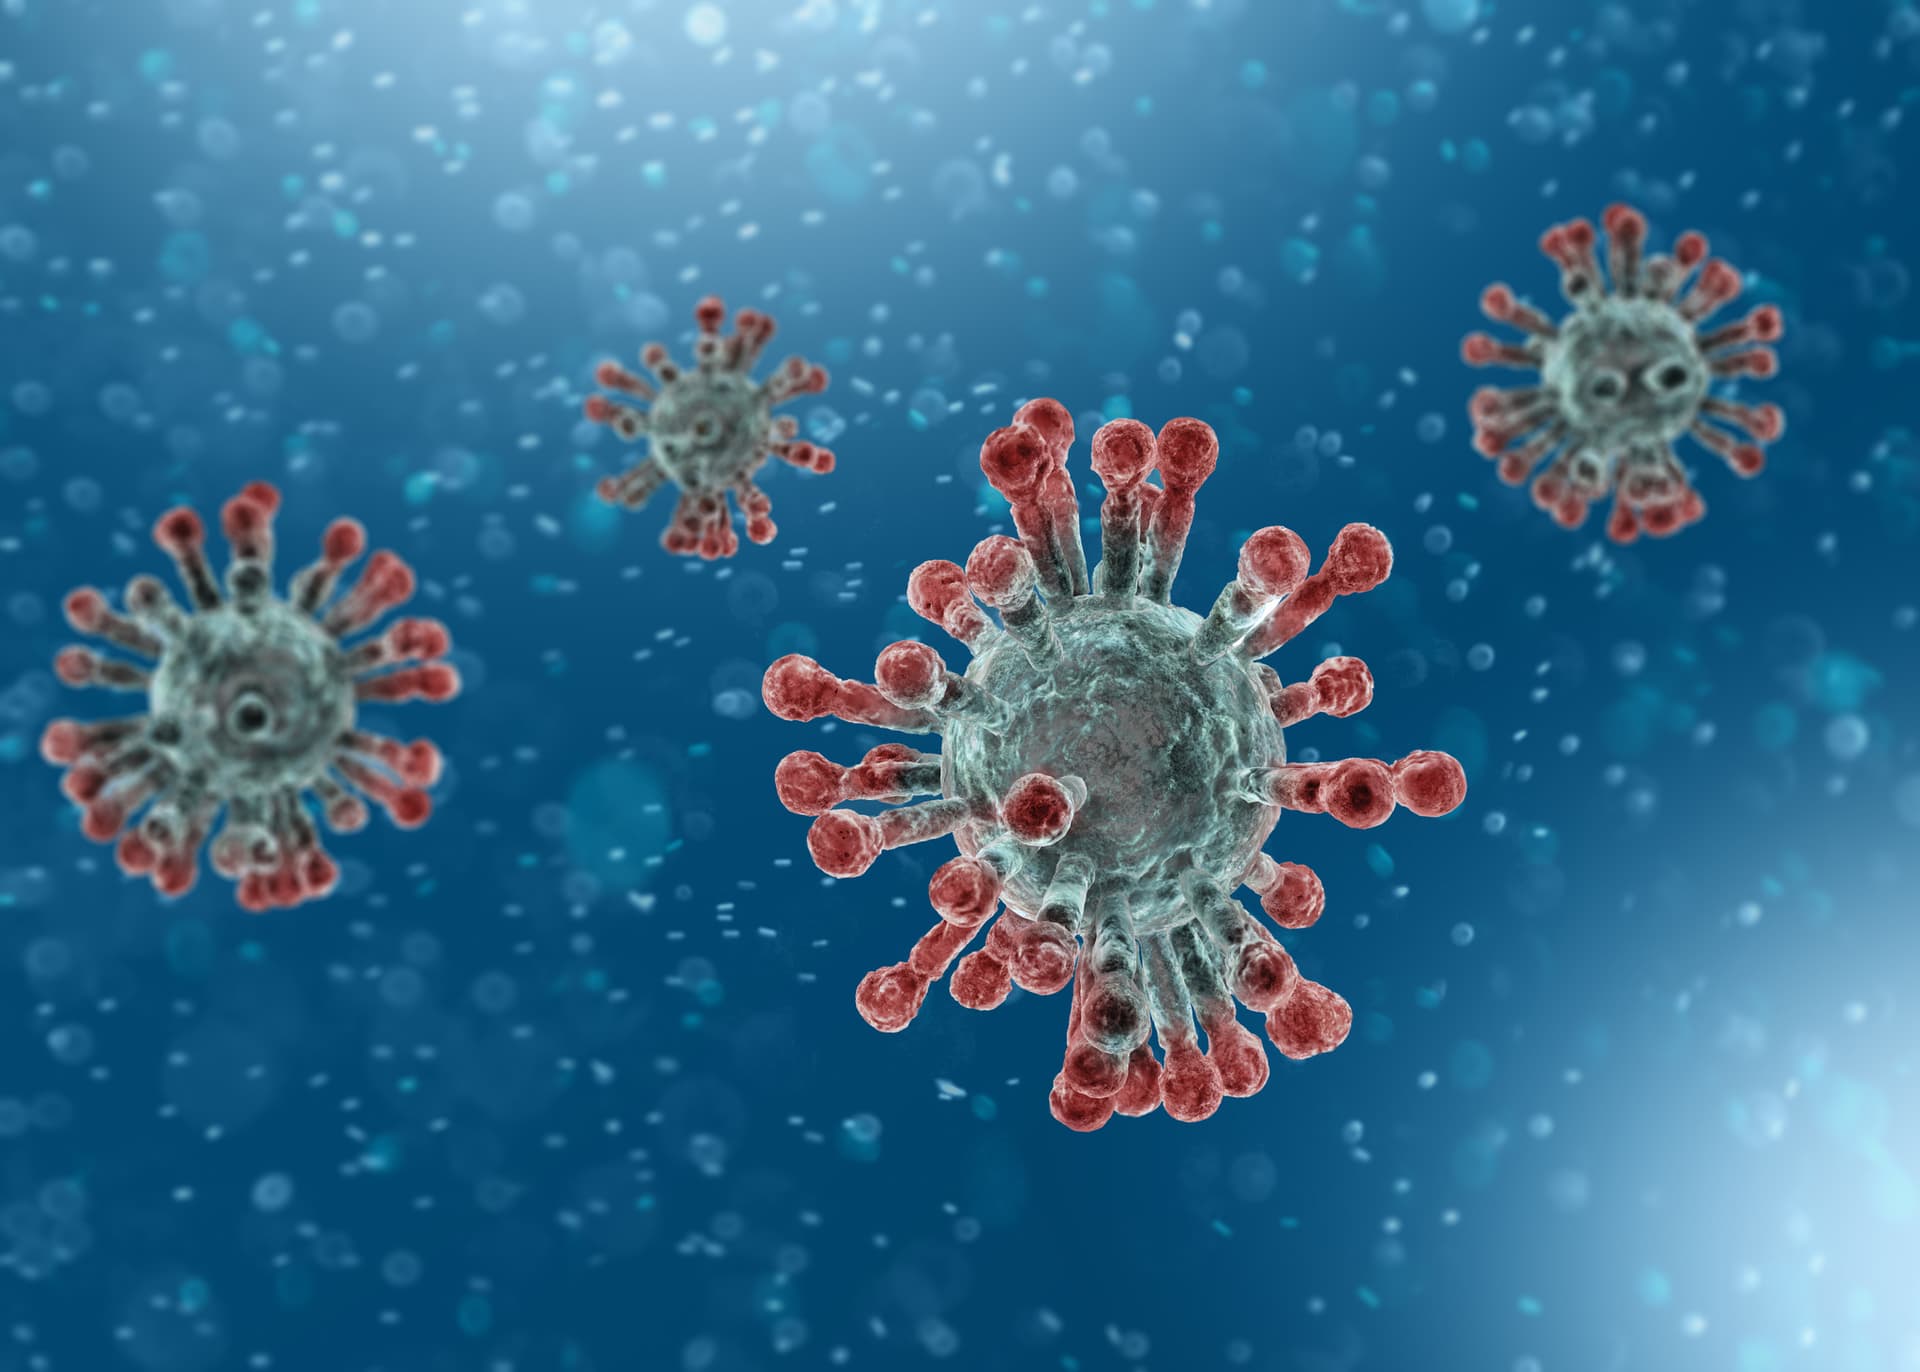 Microscopic view of Coronavirus